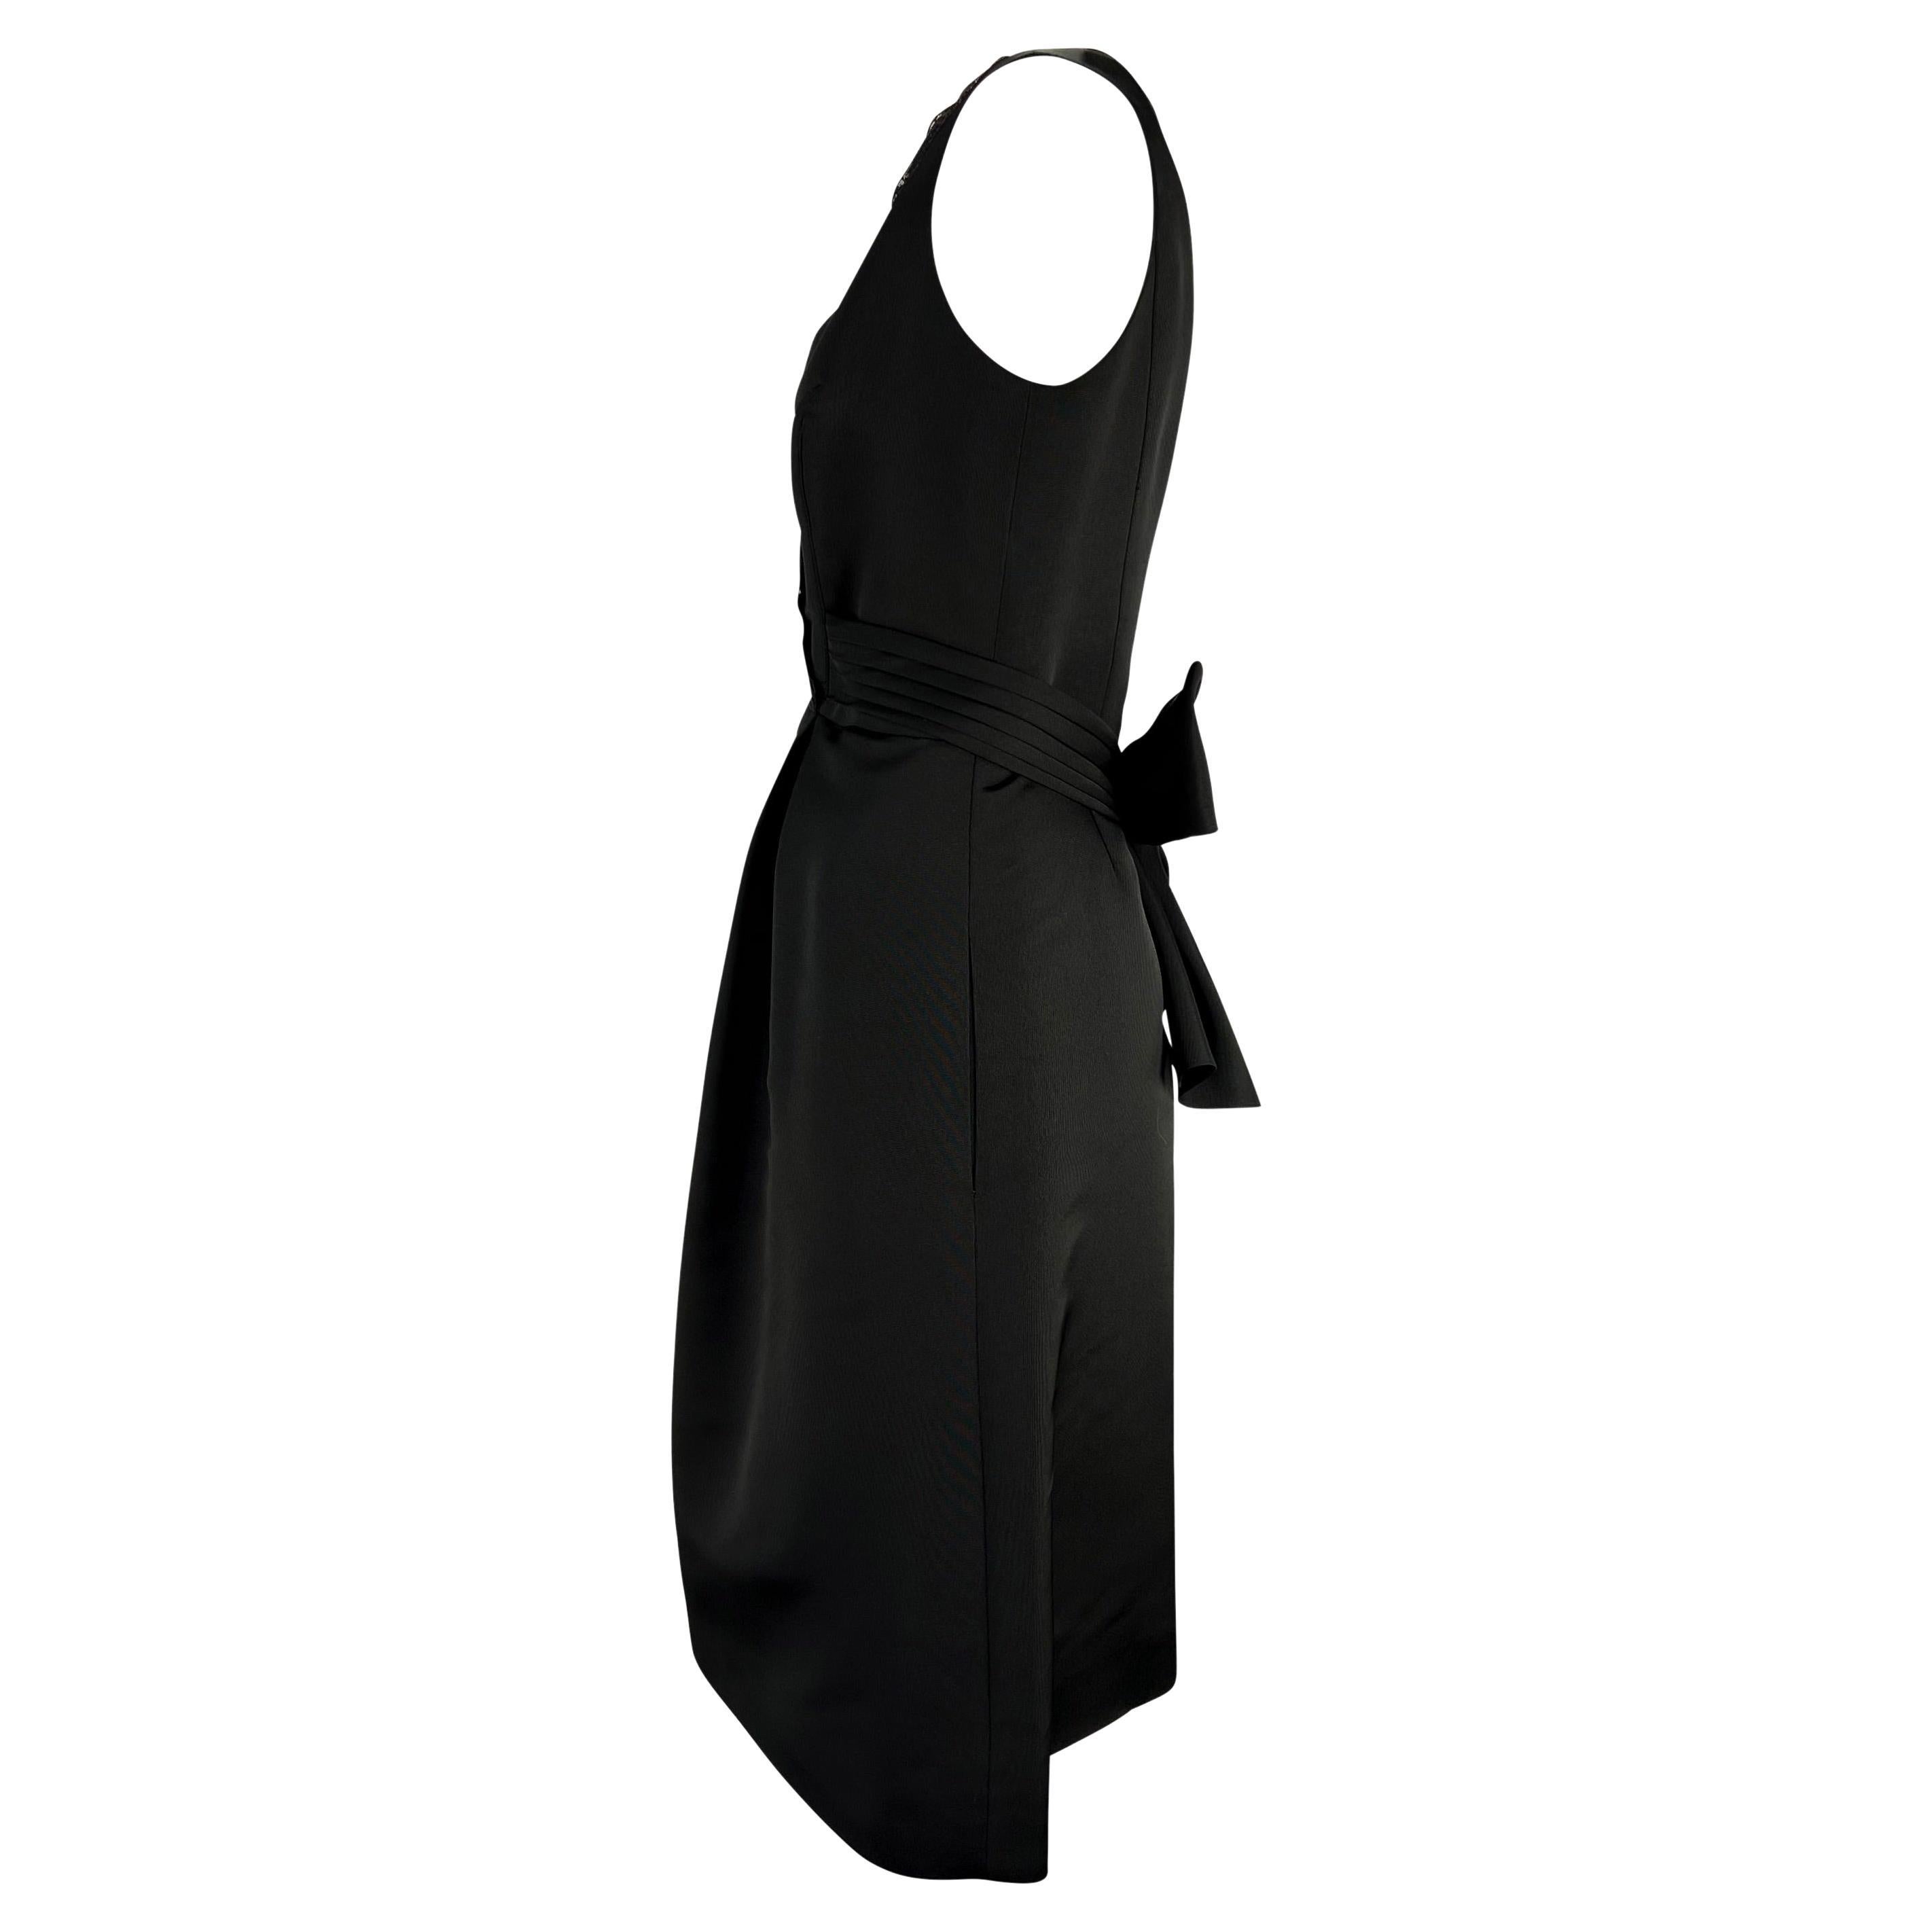 Billing présente une élégante petite robe noire vintage de Bill Blass. Datant des années 1990, cette élégante robe présente un décolleté en V doublé de dentelle, un nœud qui s'enroule autour de la taille et des poches dissimulées sur les hanches.